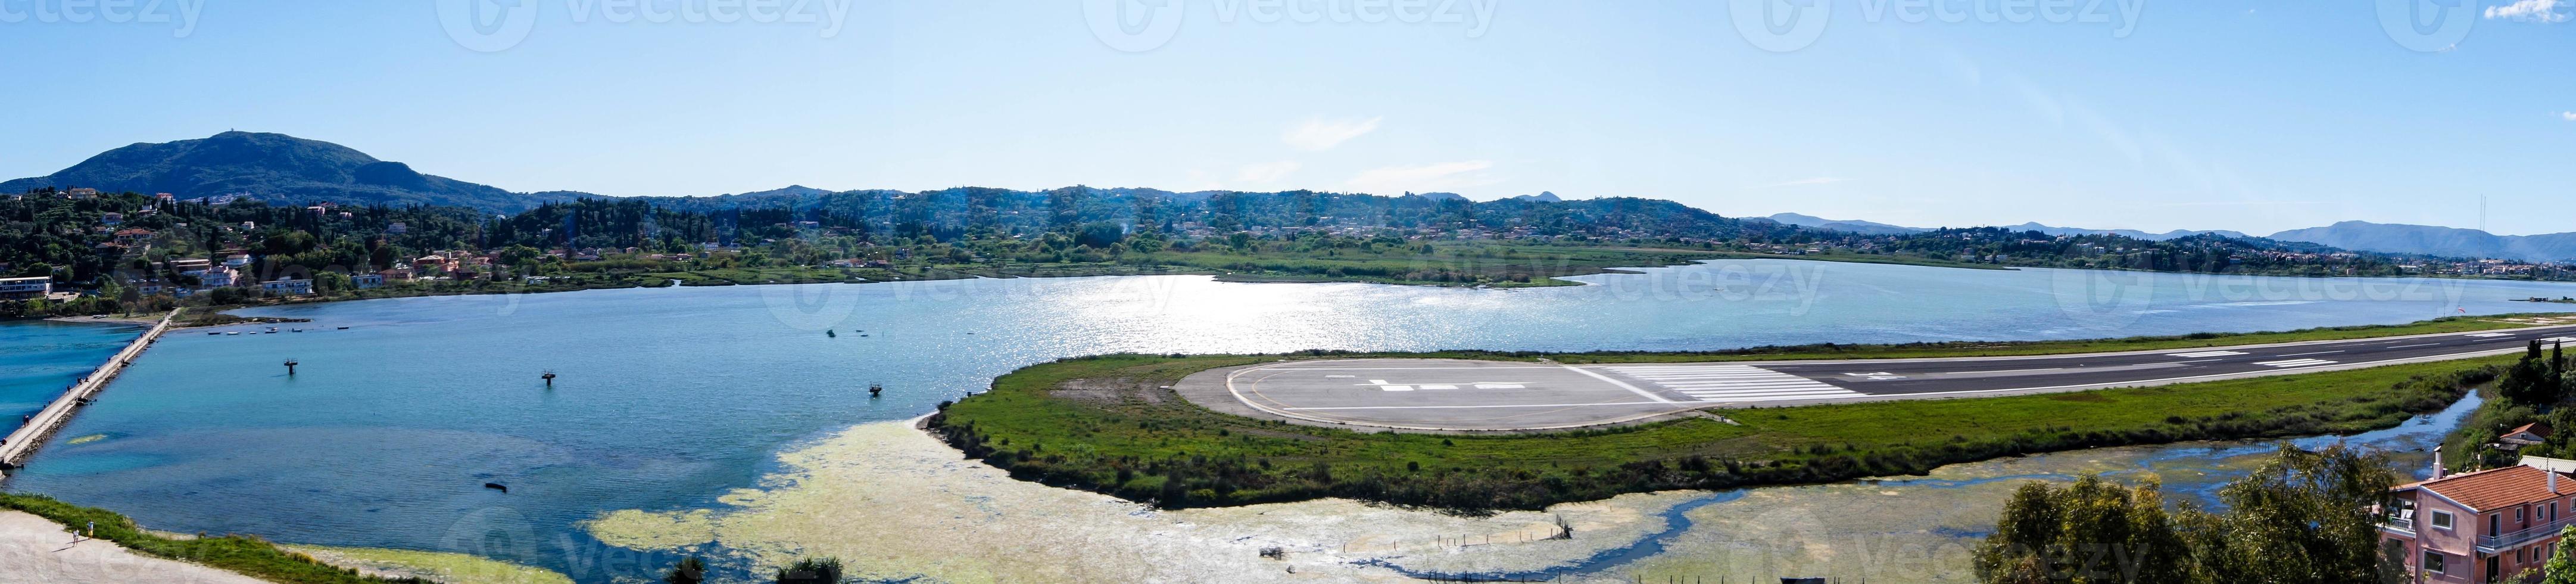 paisaje del aeropuerto de la ciudad de corfú foto